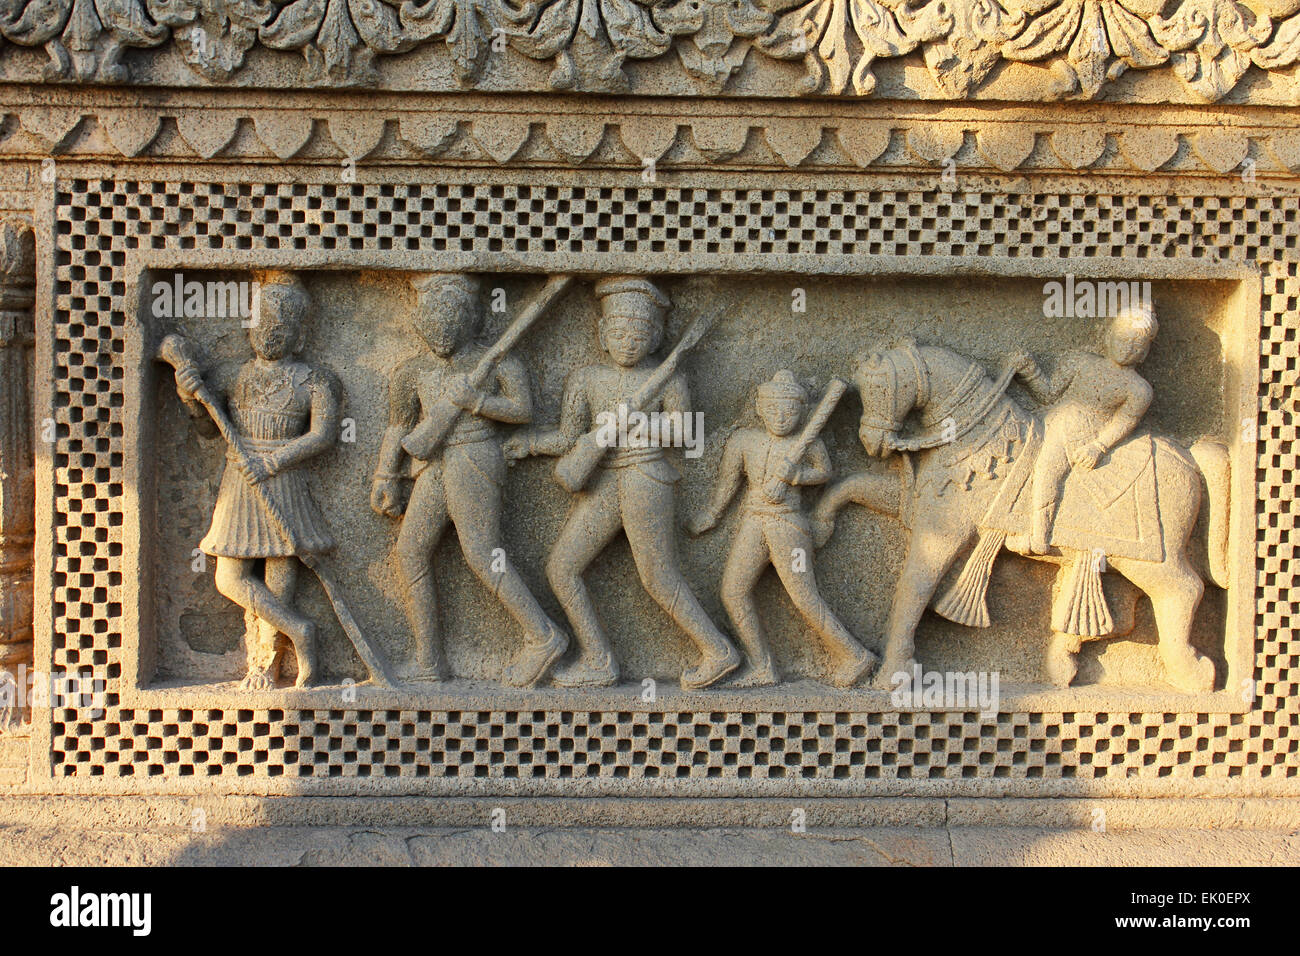 Stone Carved sculpture at Ahilyabai Holkar fort, at the Banks of Narmada River, Maheswar, Khargone, Madhya Pradesh, India Stock Photo